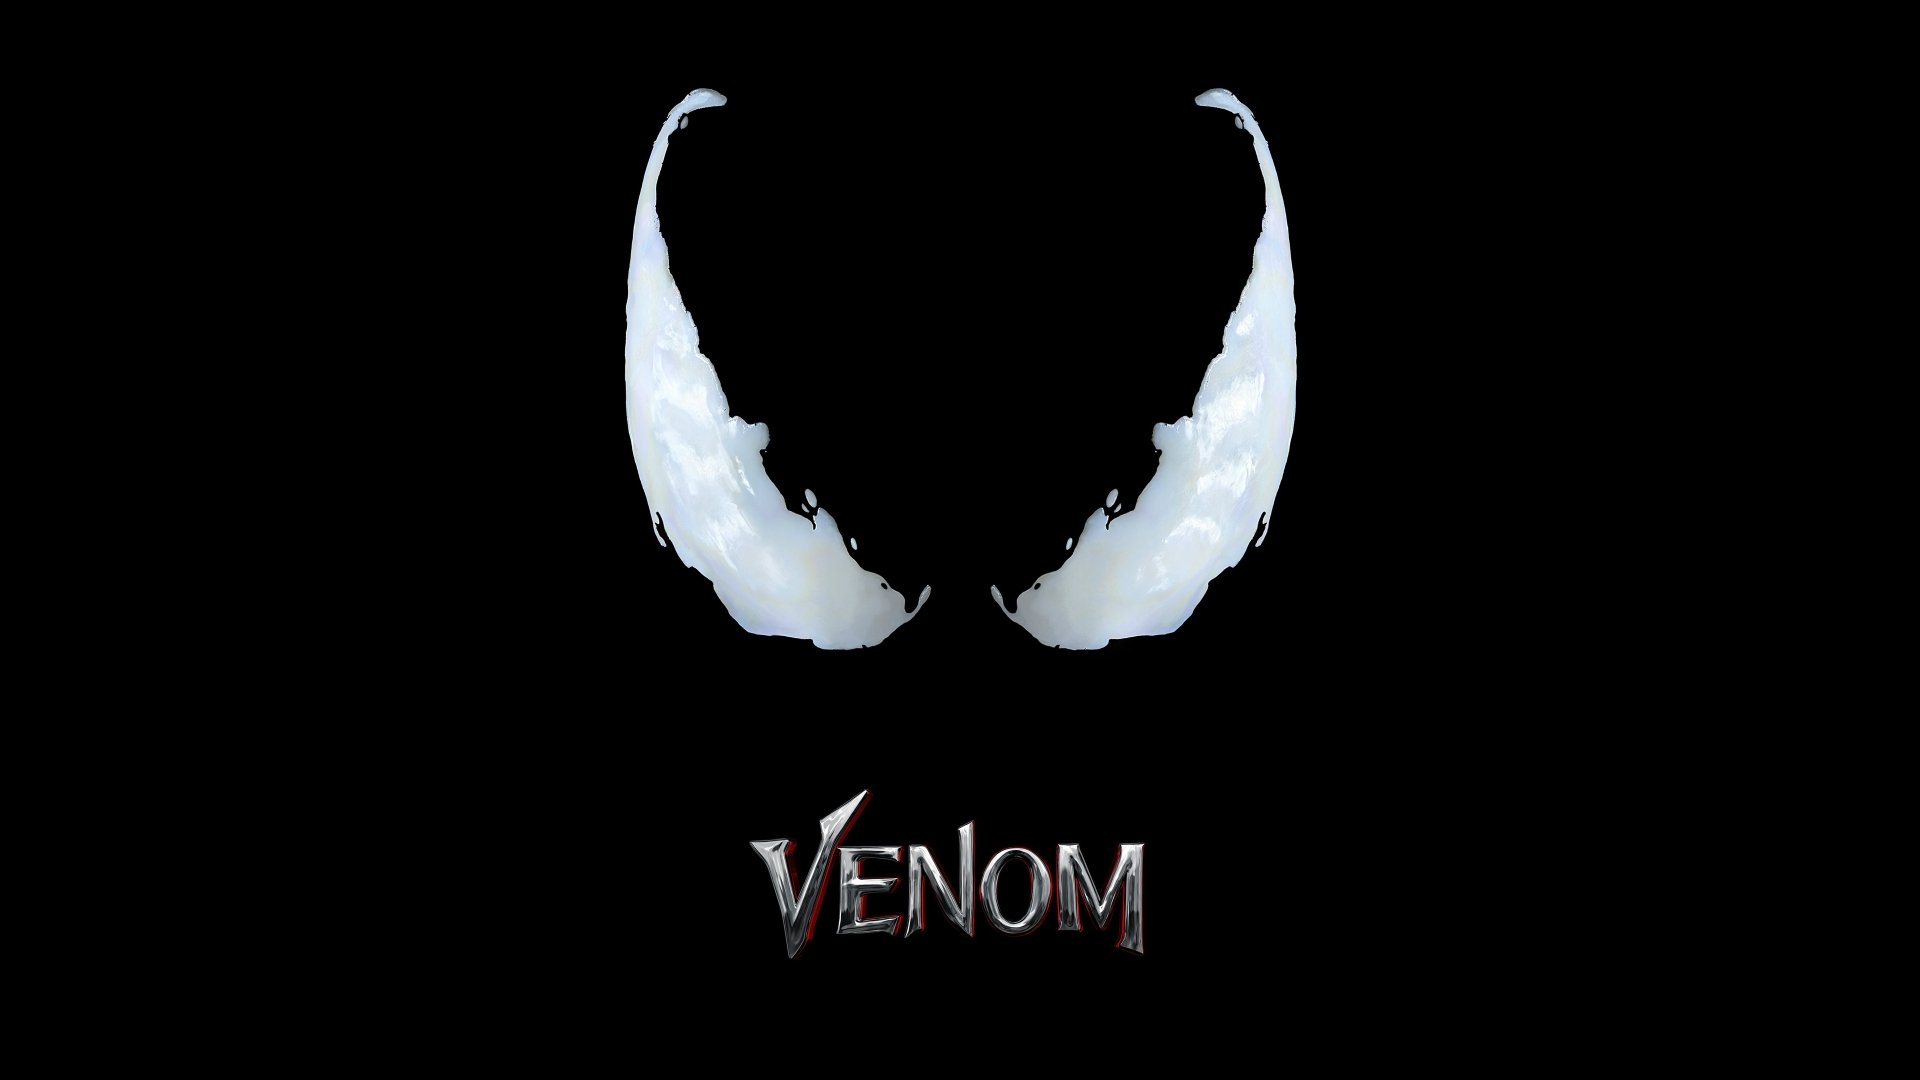 venom wallpaper hd 1920x1080